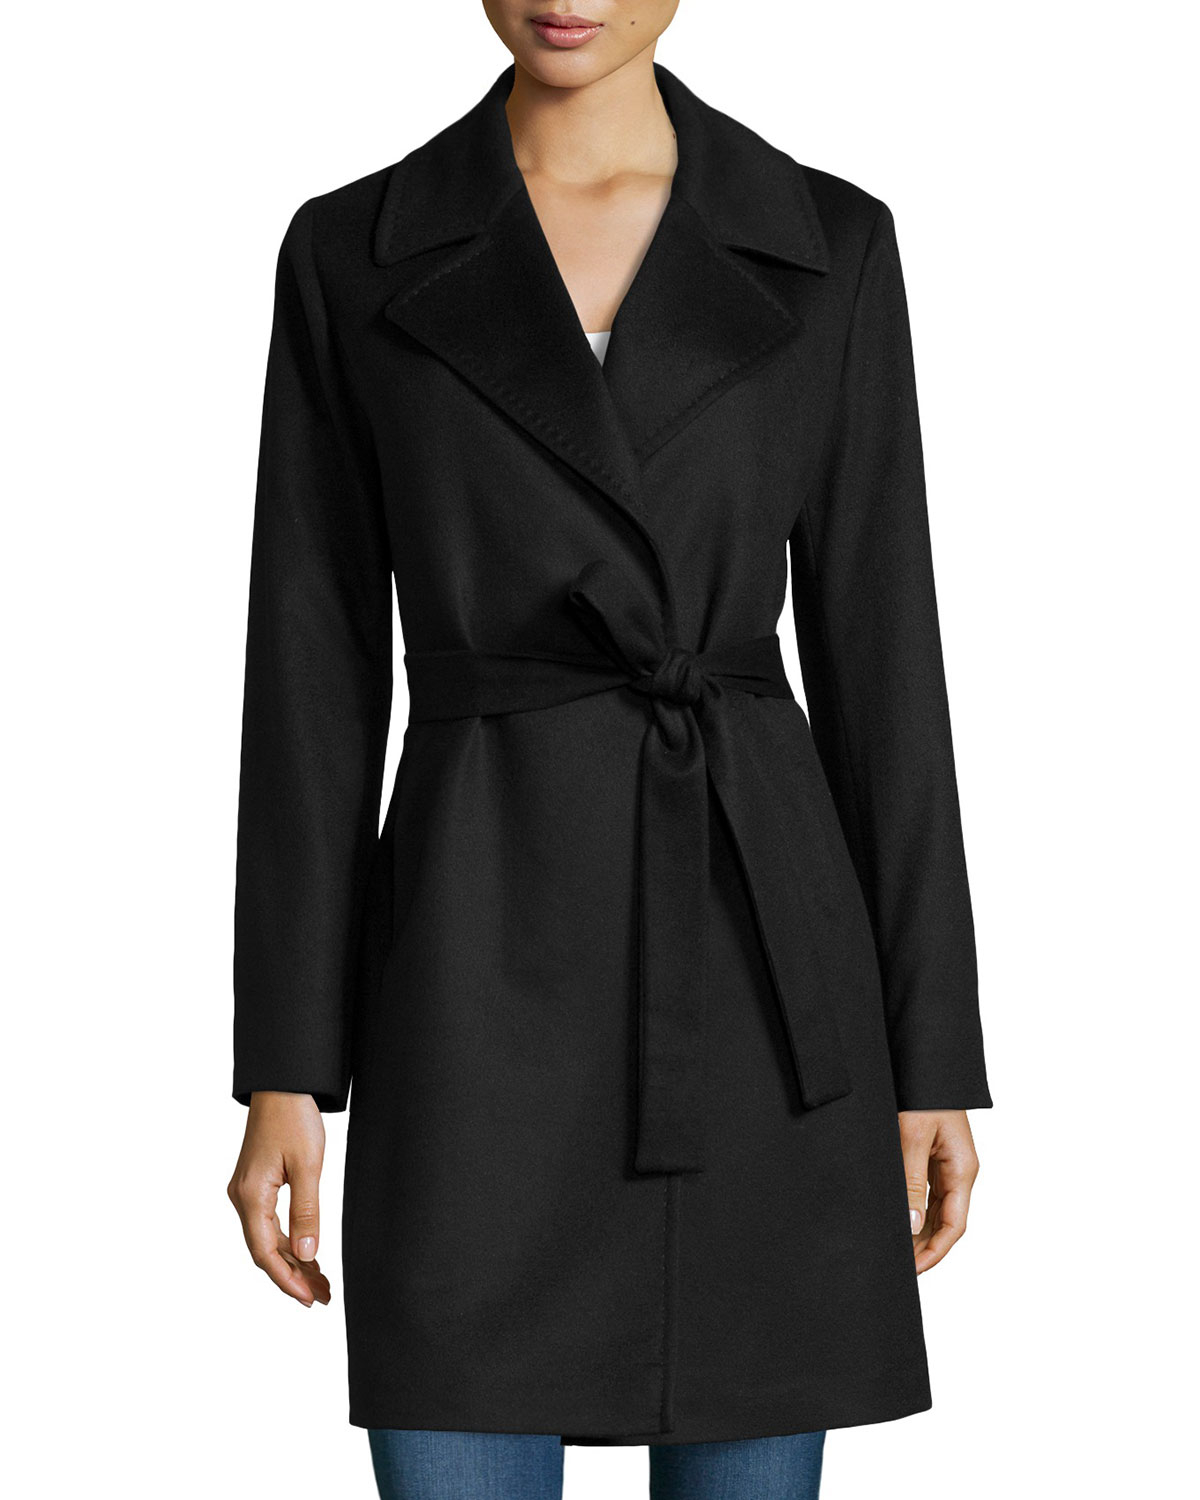 Lyst - Fleurette Cashmere Notched-Collar Wrap Coat in Black